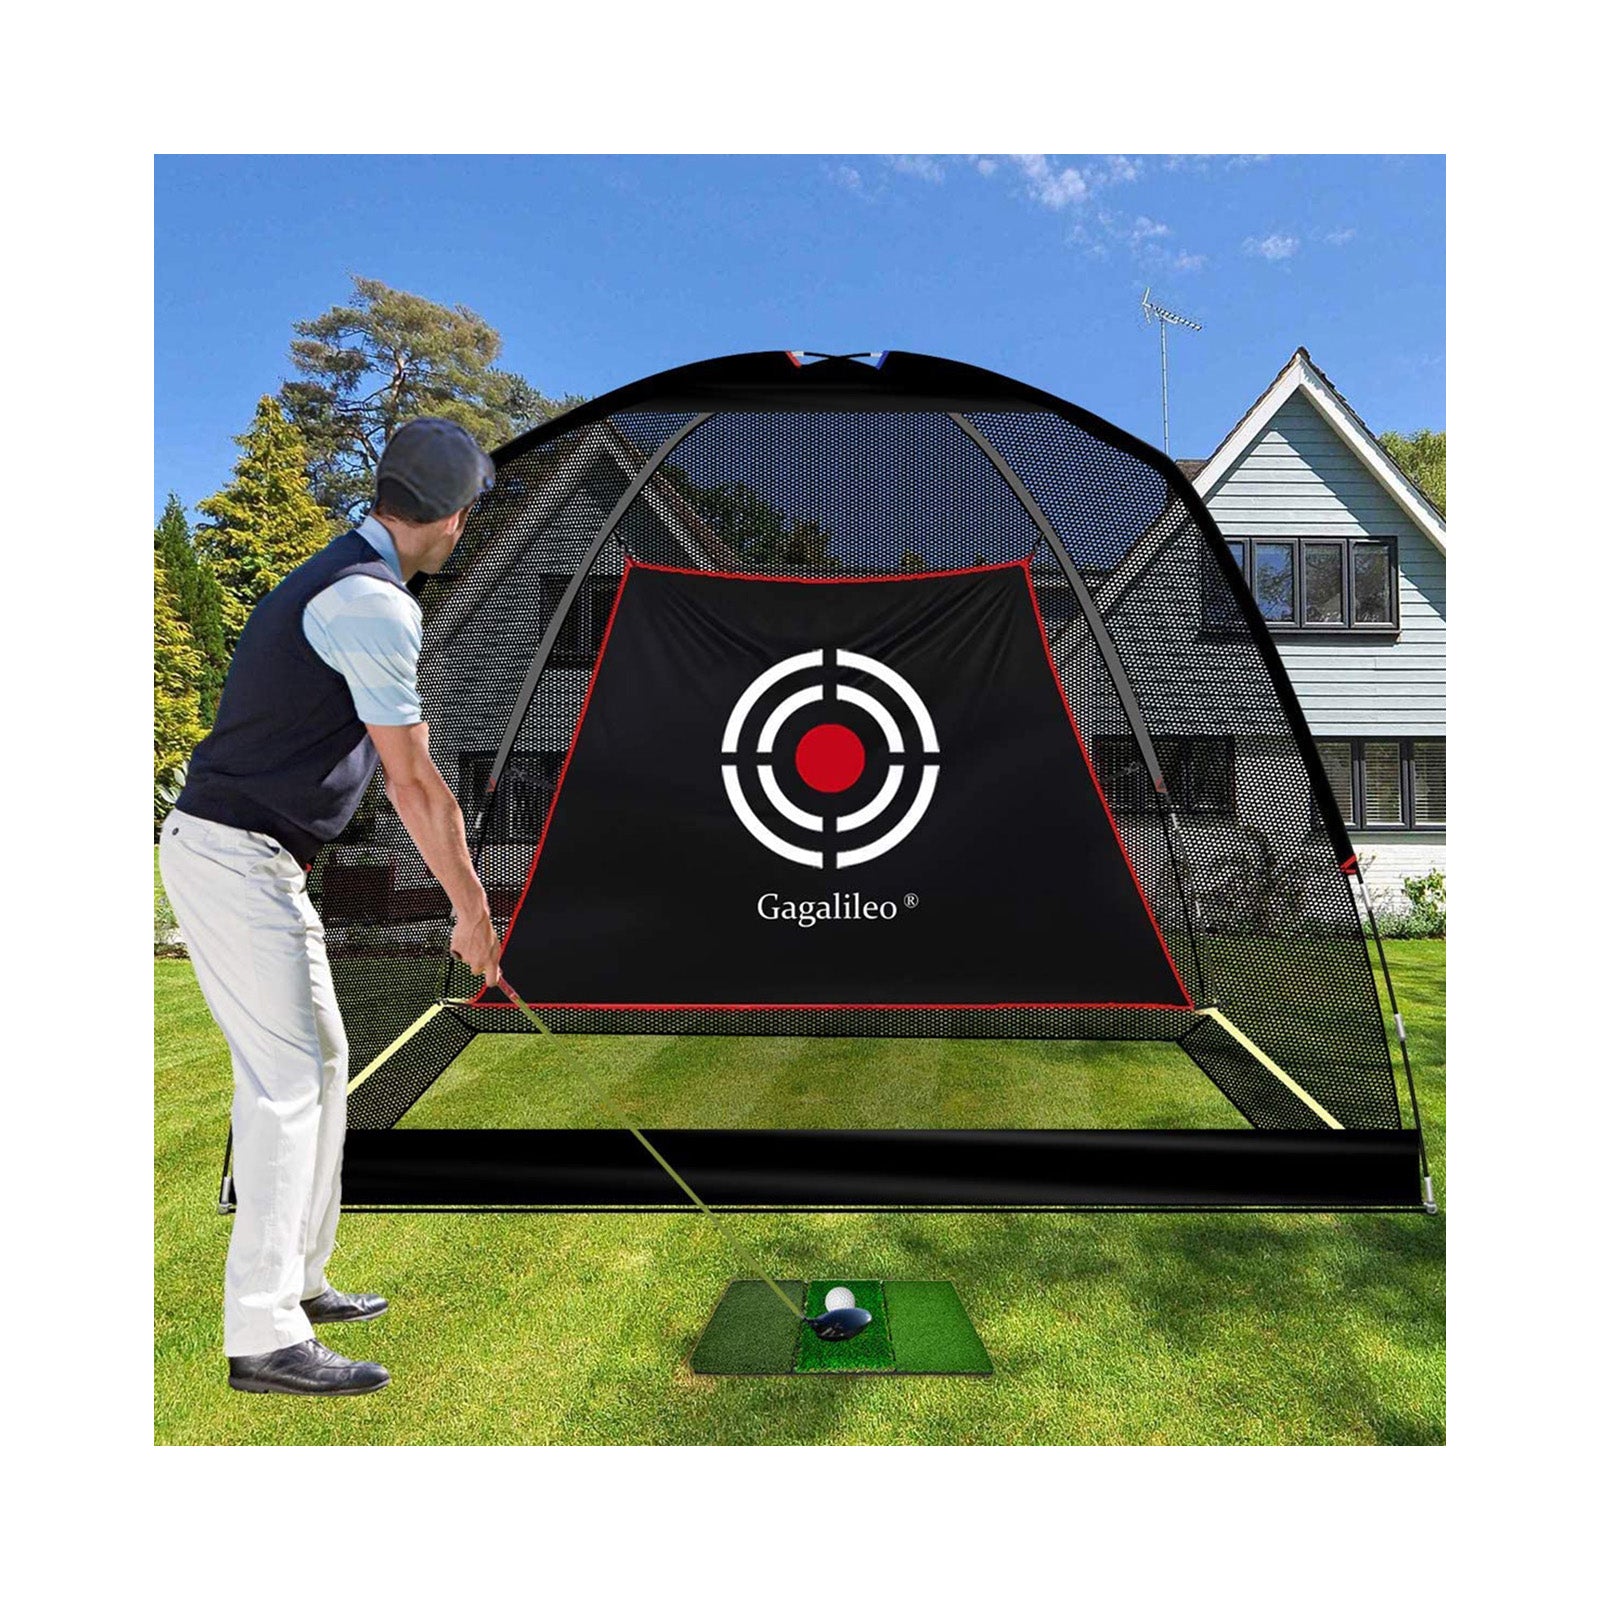 Red de golf deportiva Galileo para conducir en el patio trasero Red de práctica de golf 10'X 6.5'X 6' Red de golf para uso en interiores con objetivo y bolsa de transporte